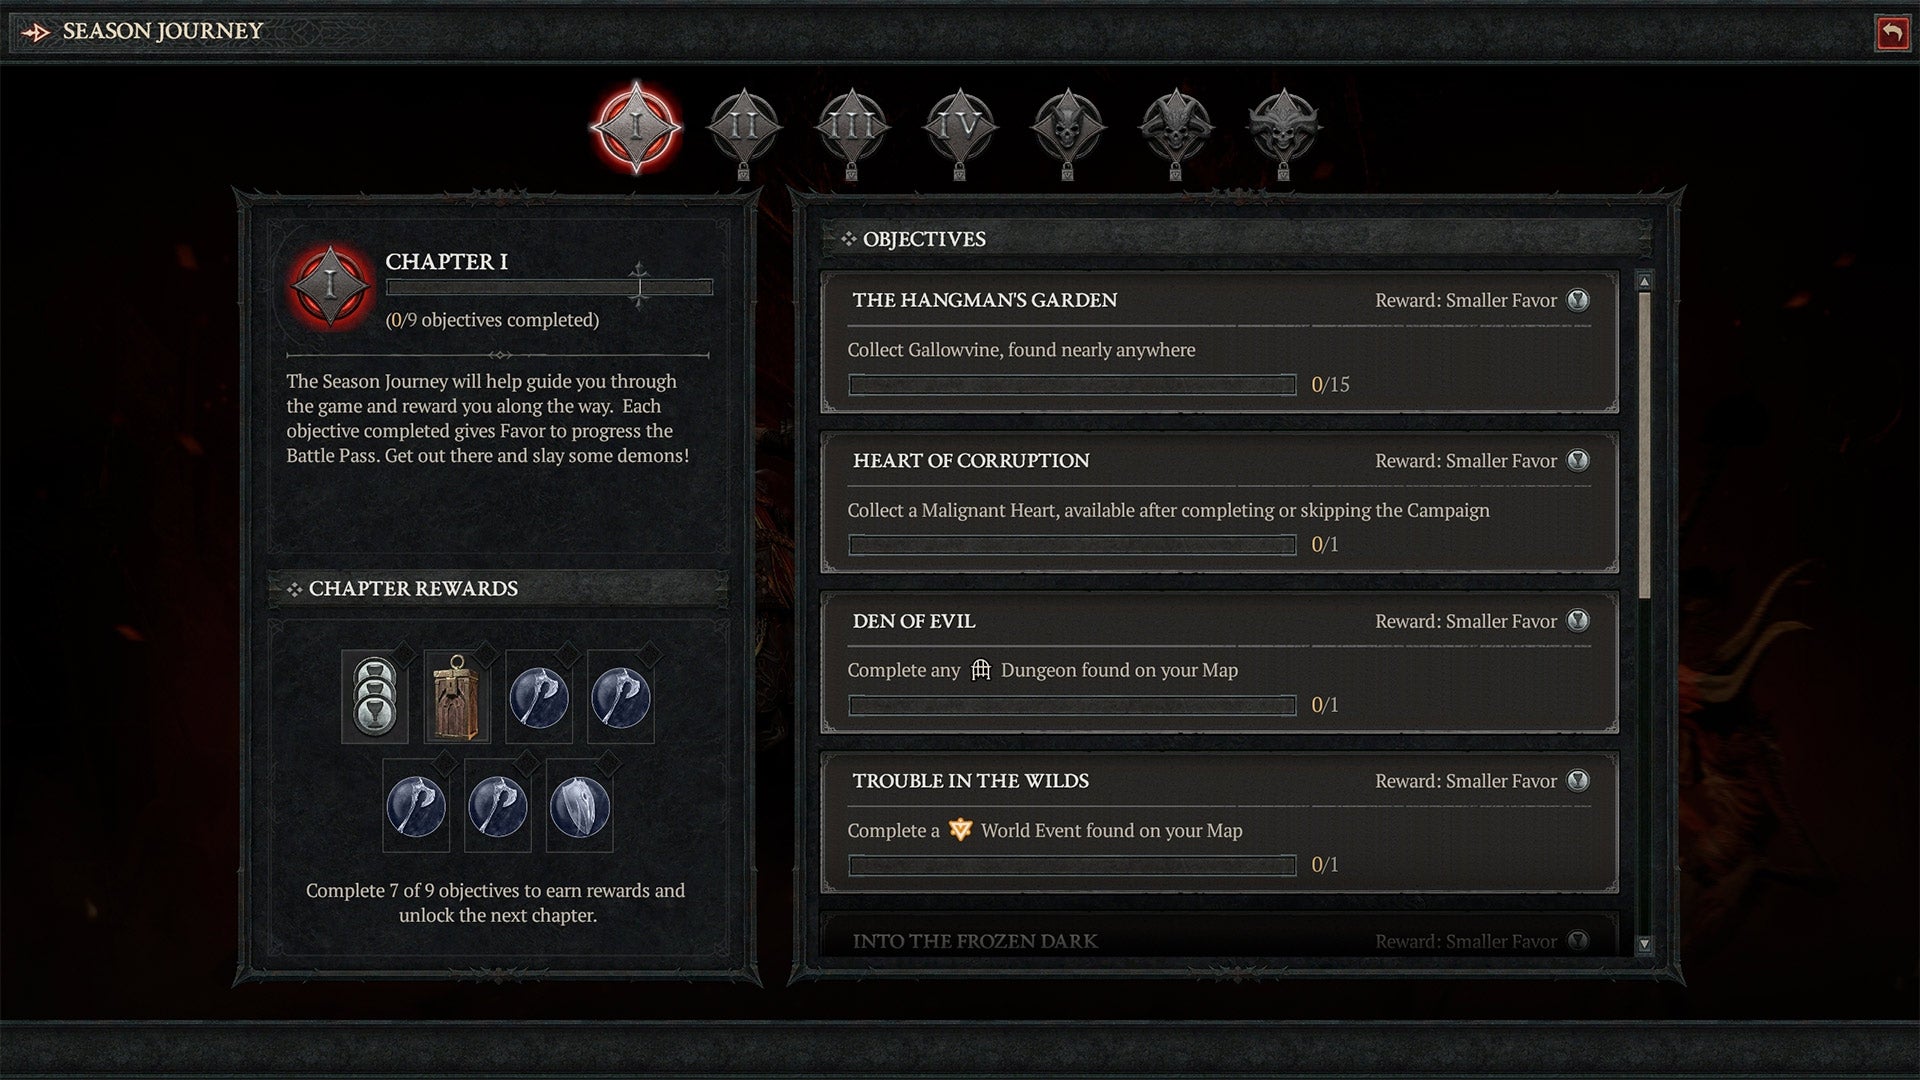 Показан скриншот меню сезонных испытаний Diablo IV.